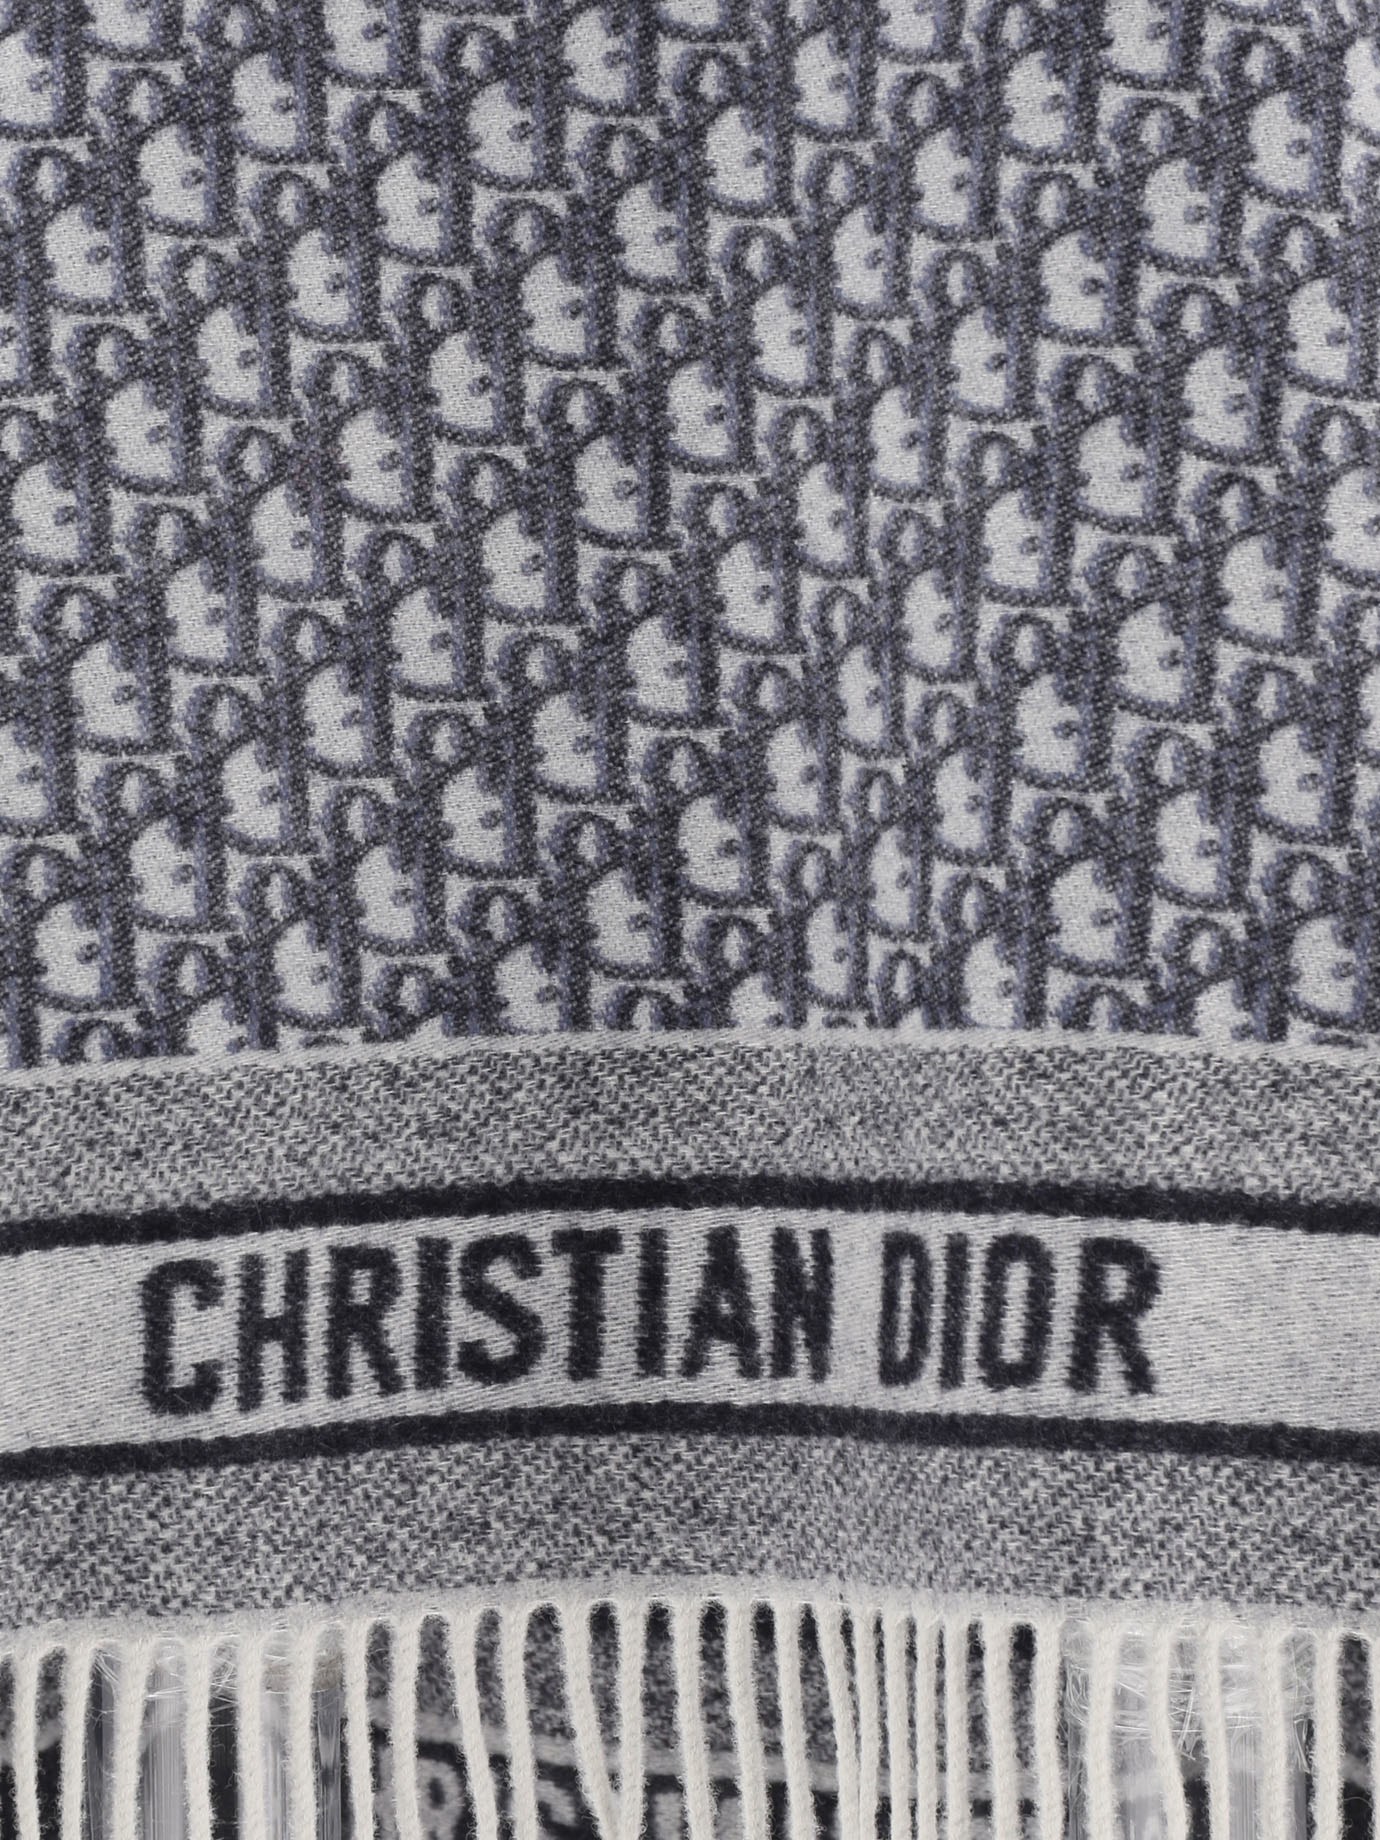  Dior Oblique  cape by Dior